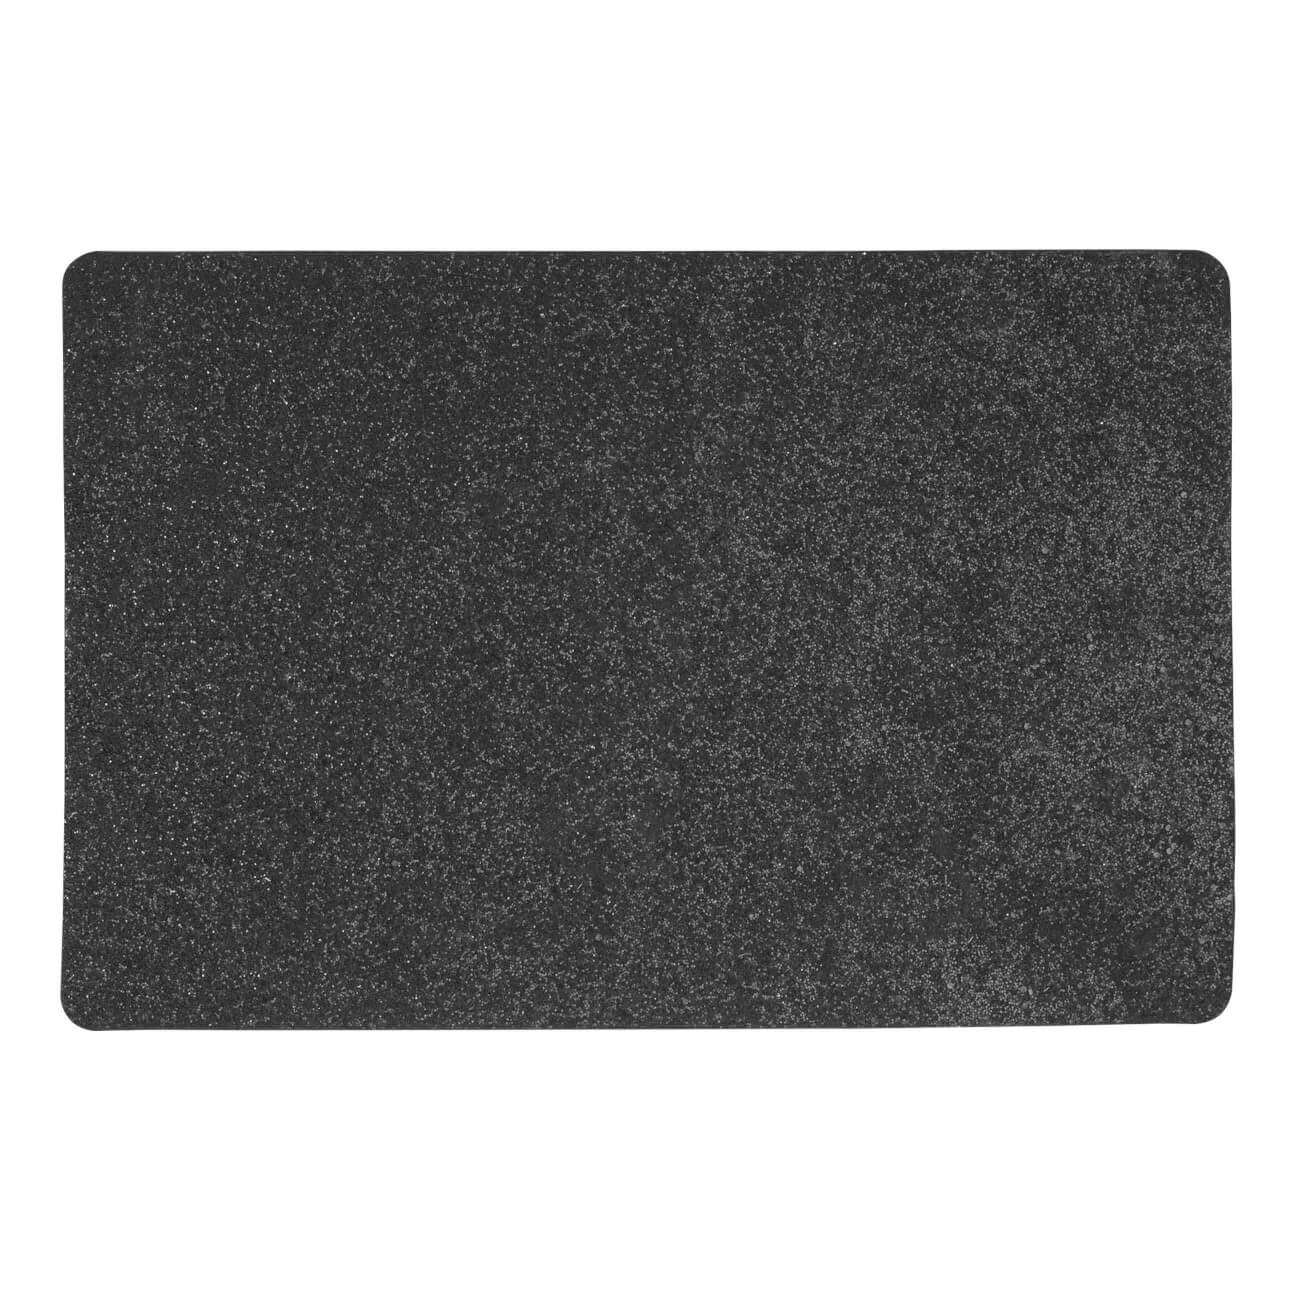 Салфетка под приборы, 30х45 см, ПВХ, прямоугольная, черная, Rock салфетка под приборы 33х46 см полиуретан прямоугольная белая белка rock print